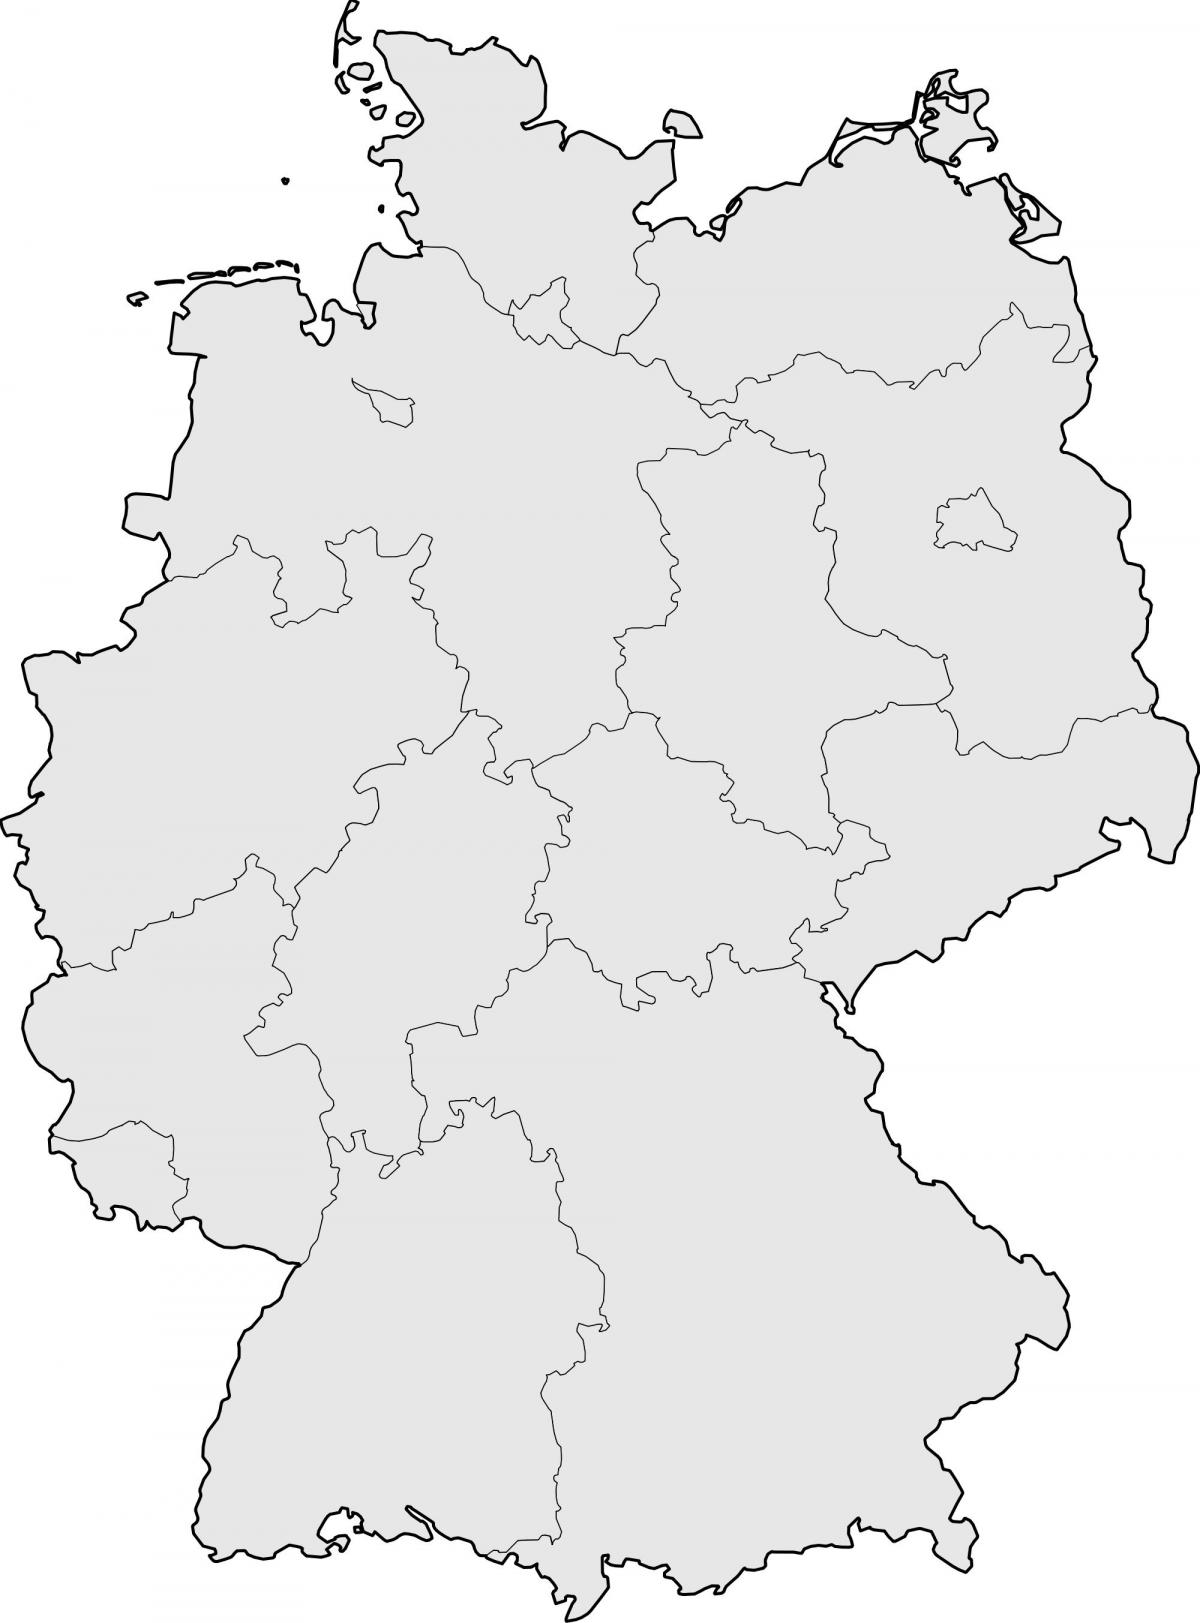 Mapa de Alemania vacío